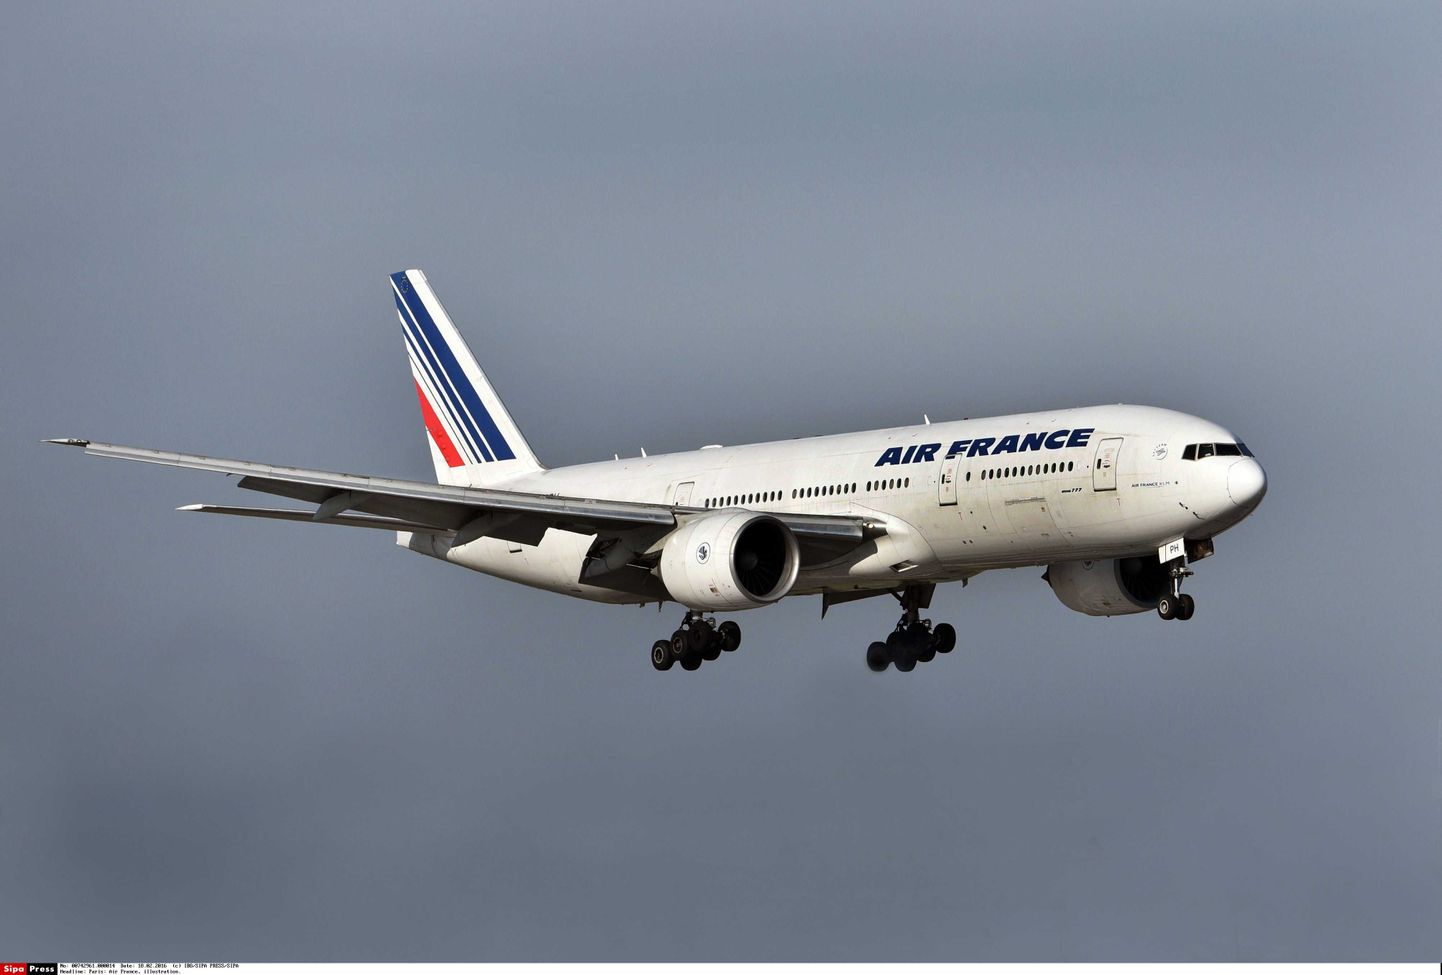 Air France'i lennuk